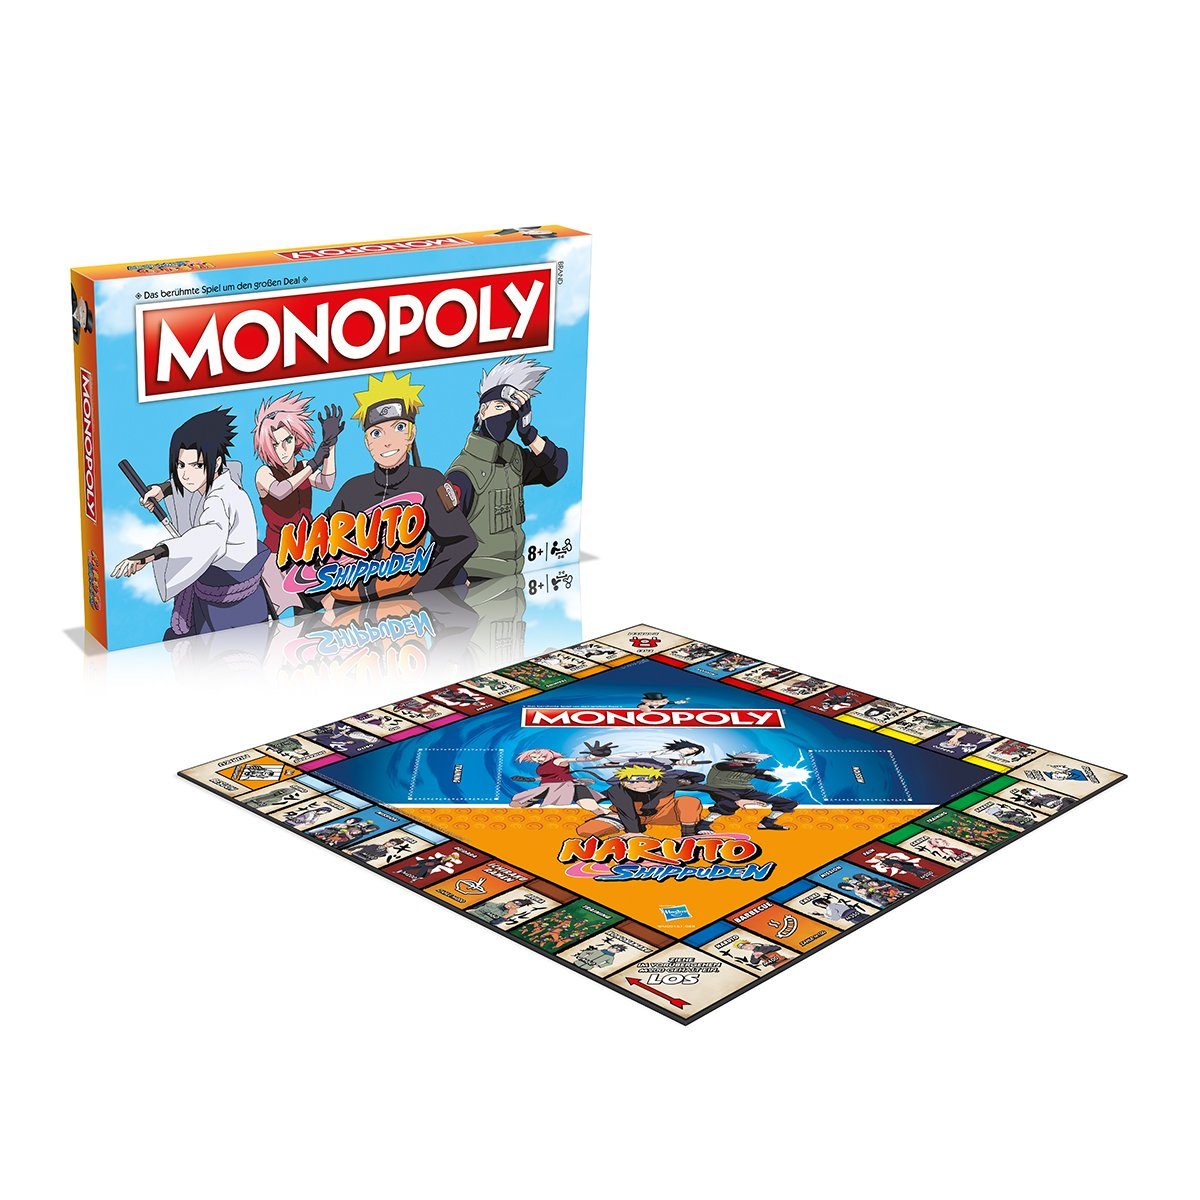 (deutsch) Moves Brettspiel Gesellschaftsspiel Monopoly Spiel, Naruto Winning Brettspiel